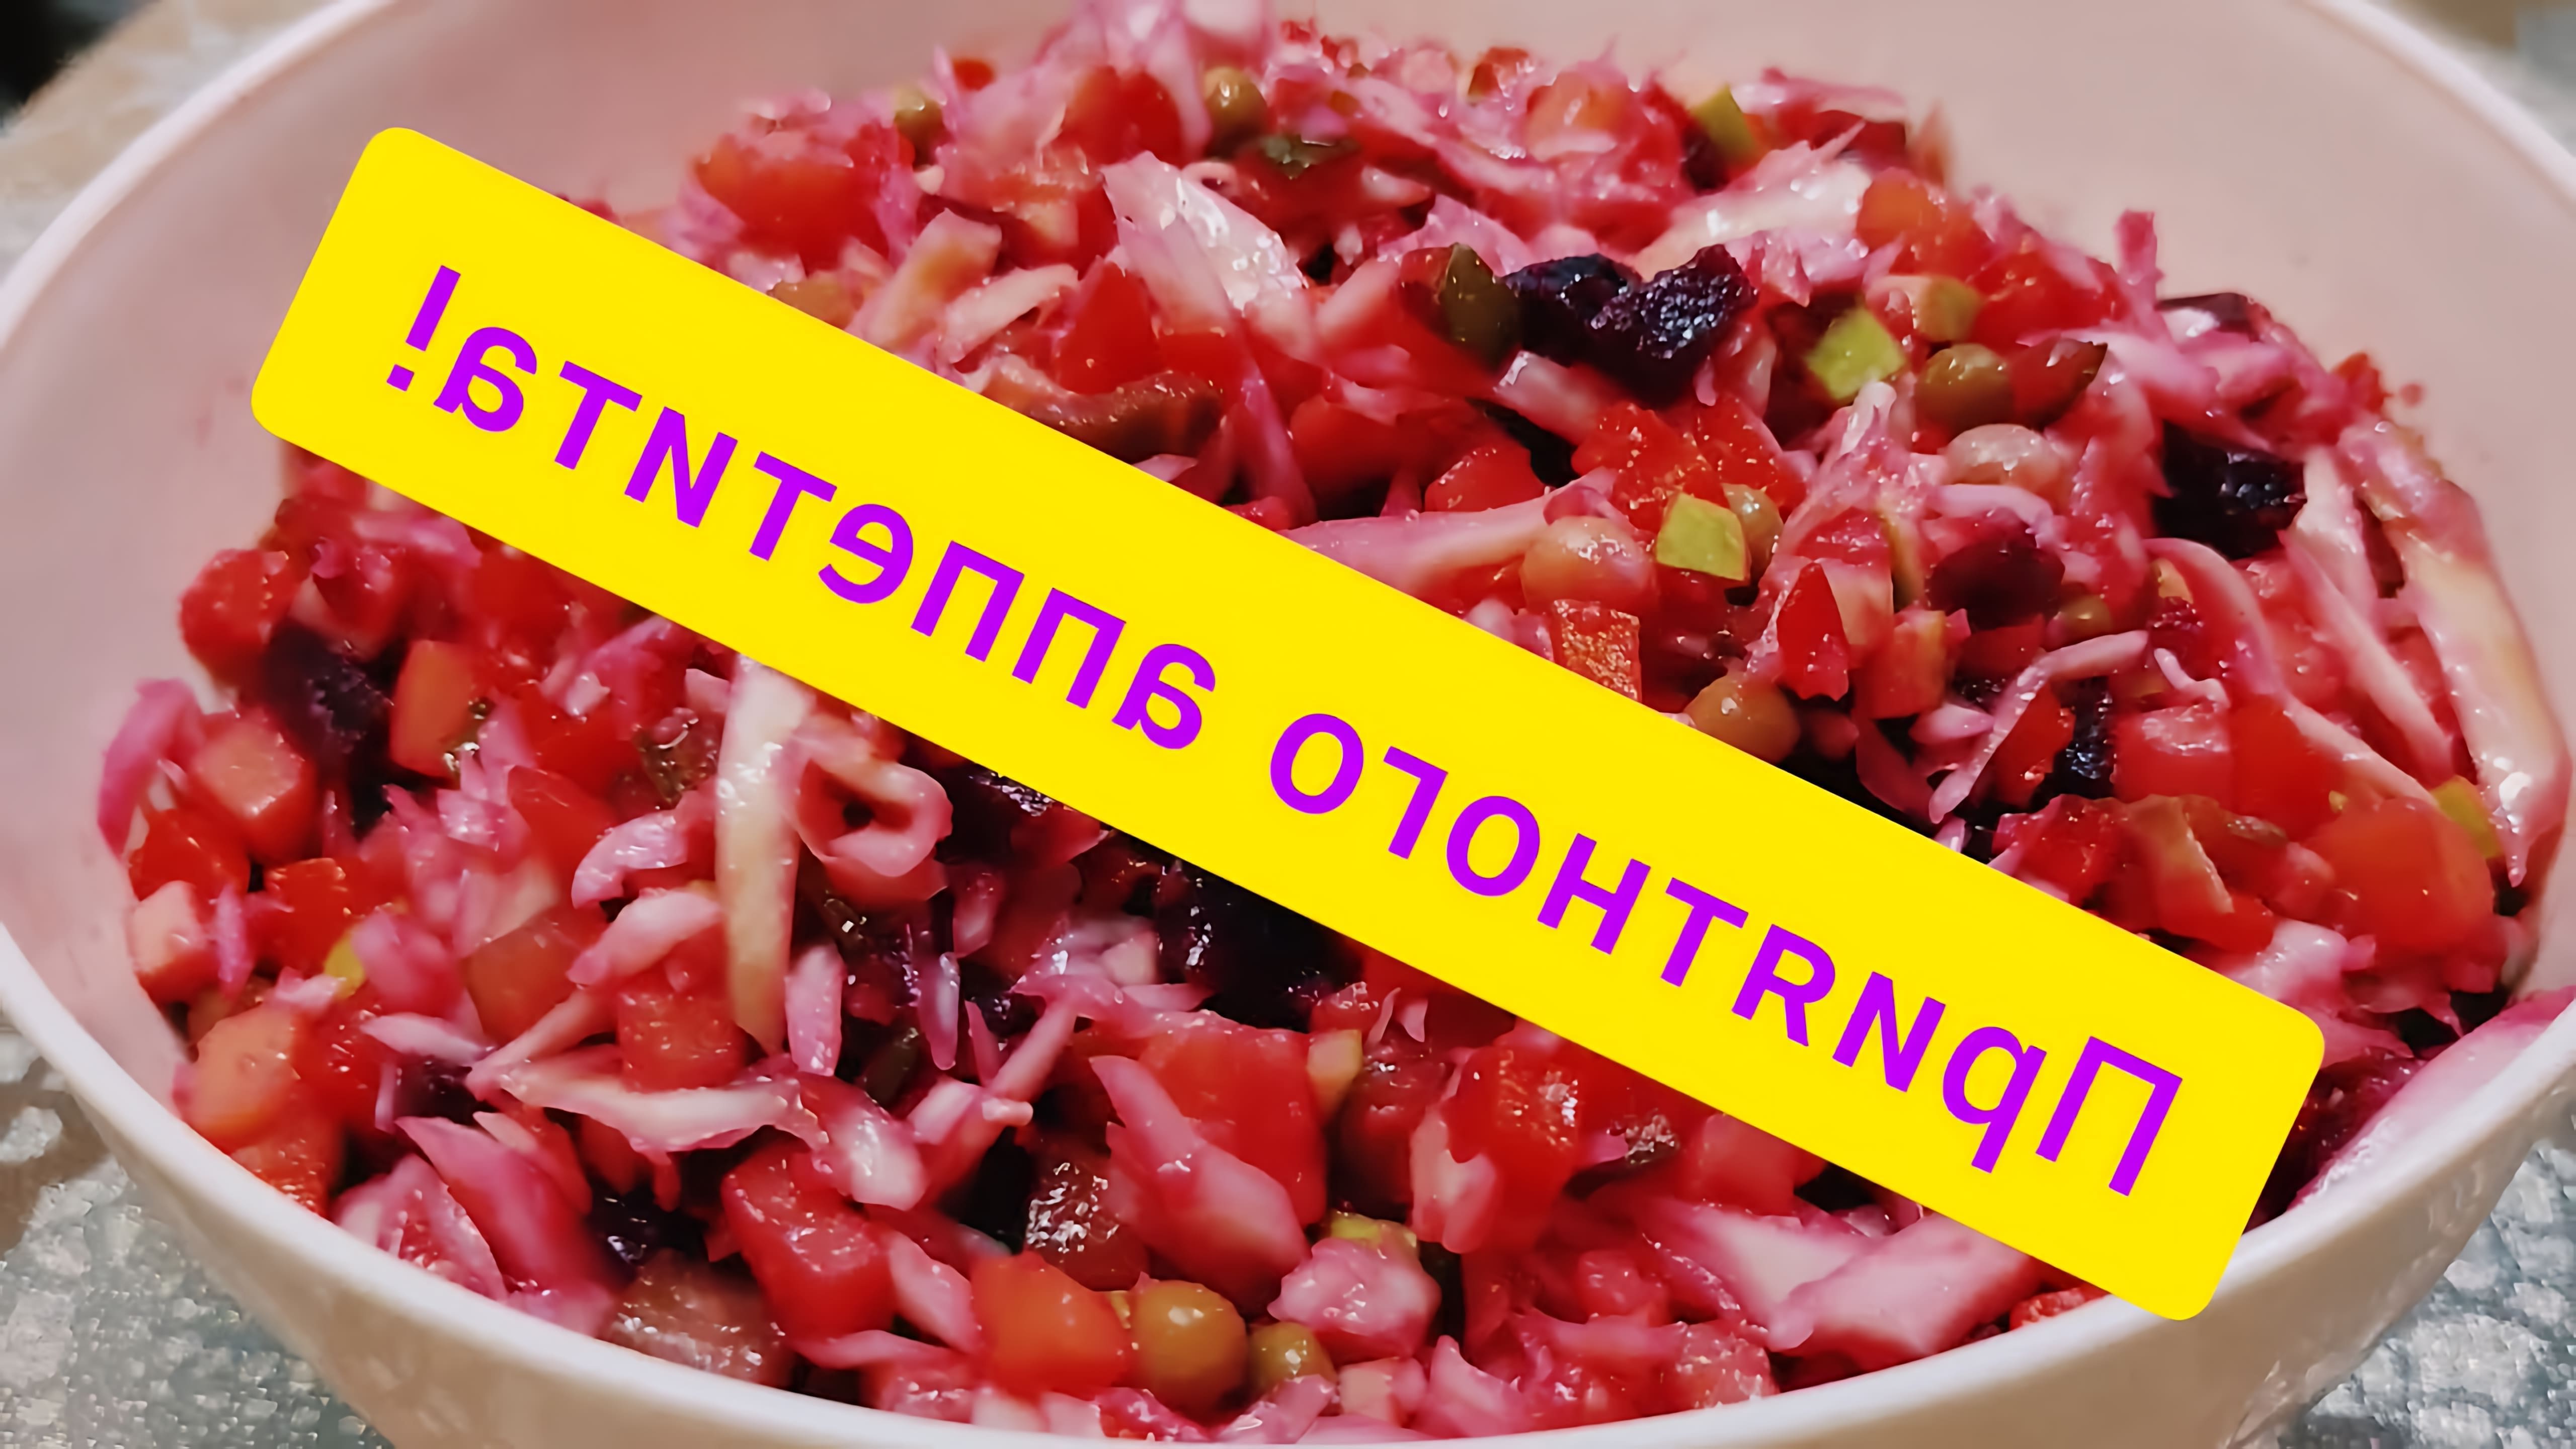 В данном видео демонстрируется рецепт приготовления салата "Винегрет" без квашеной капусты